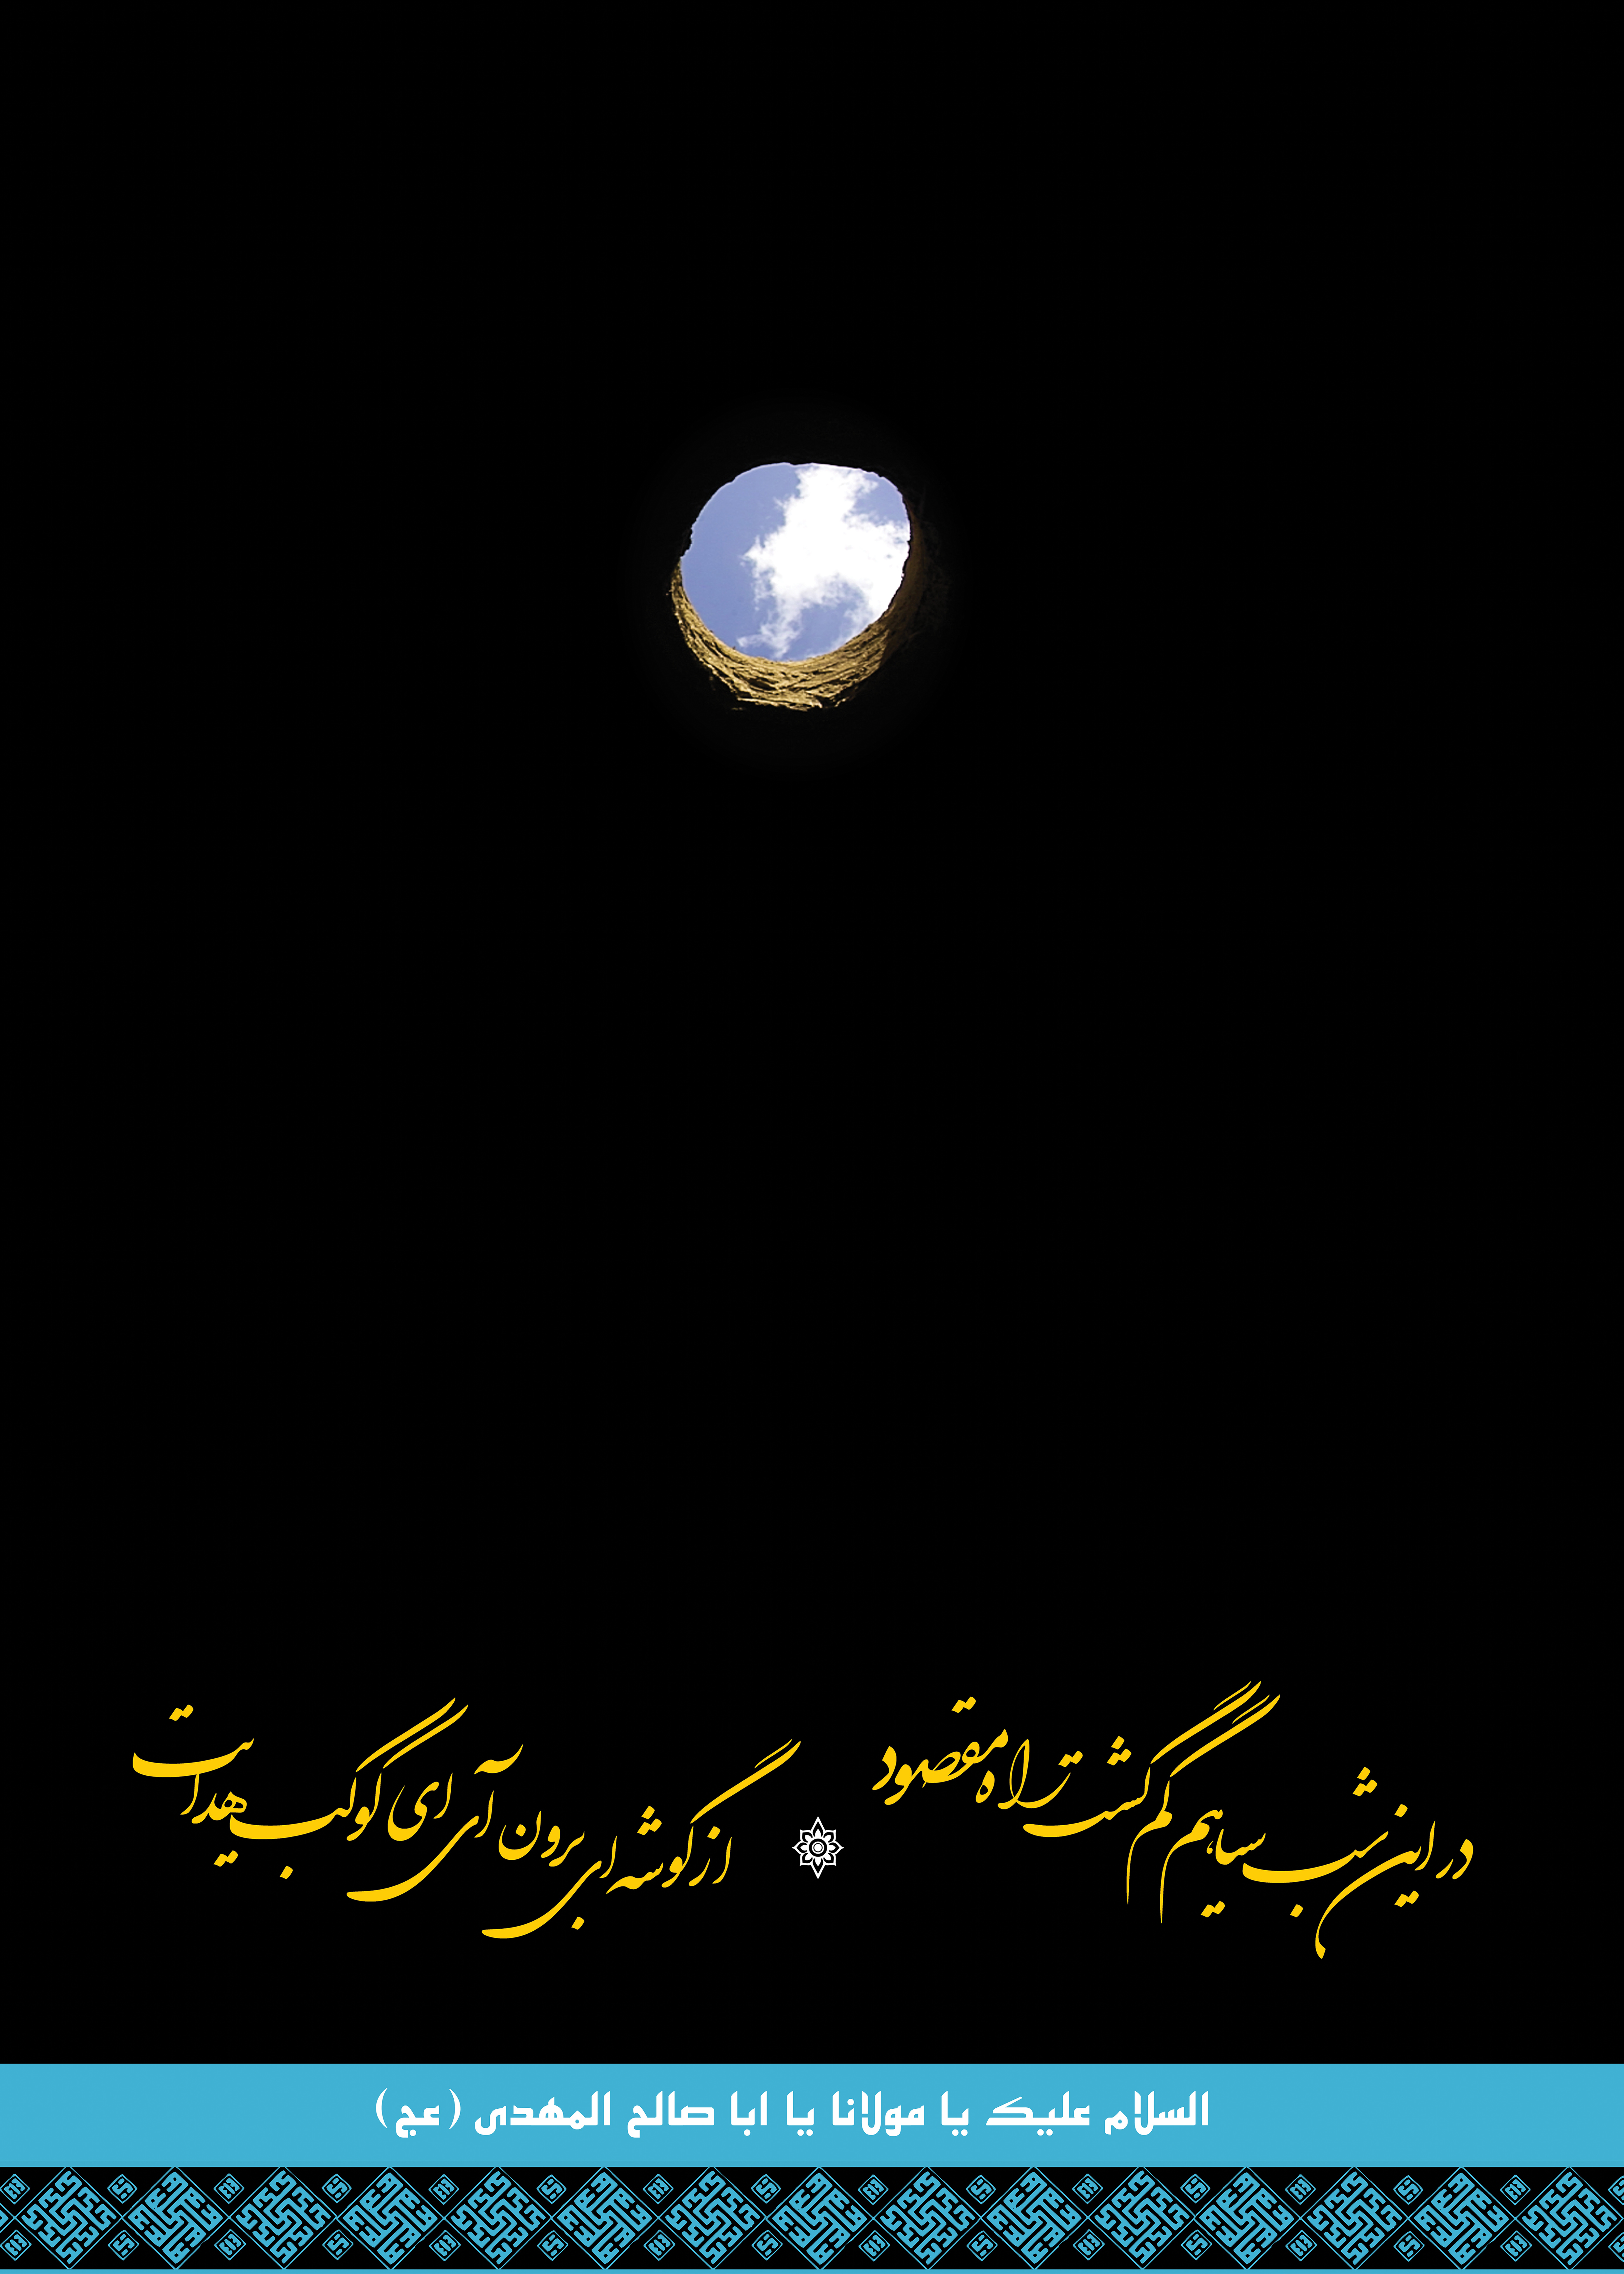 عکس پروفایل السلام علیک یا مولانا یا اباصالح المهدی با طرح جدید و زیبا